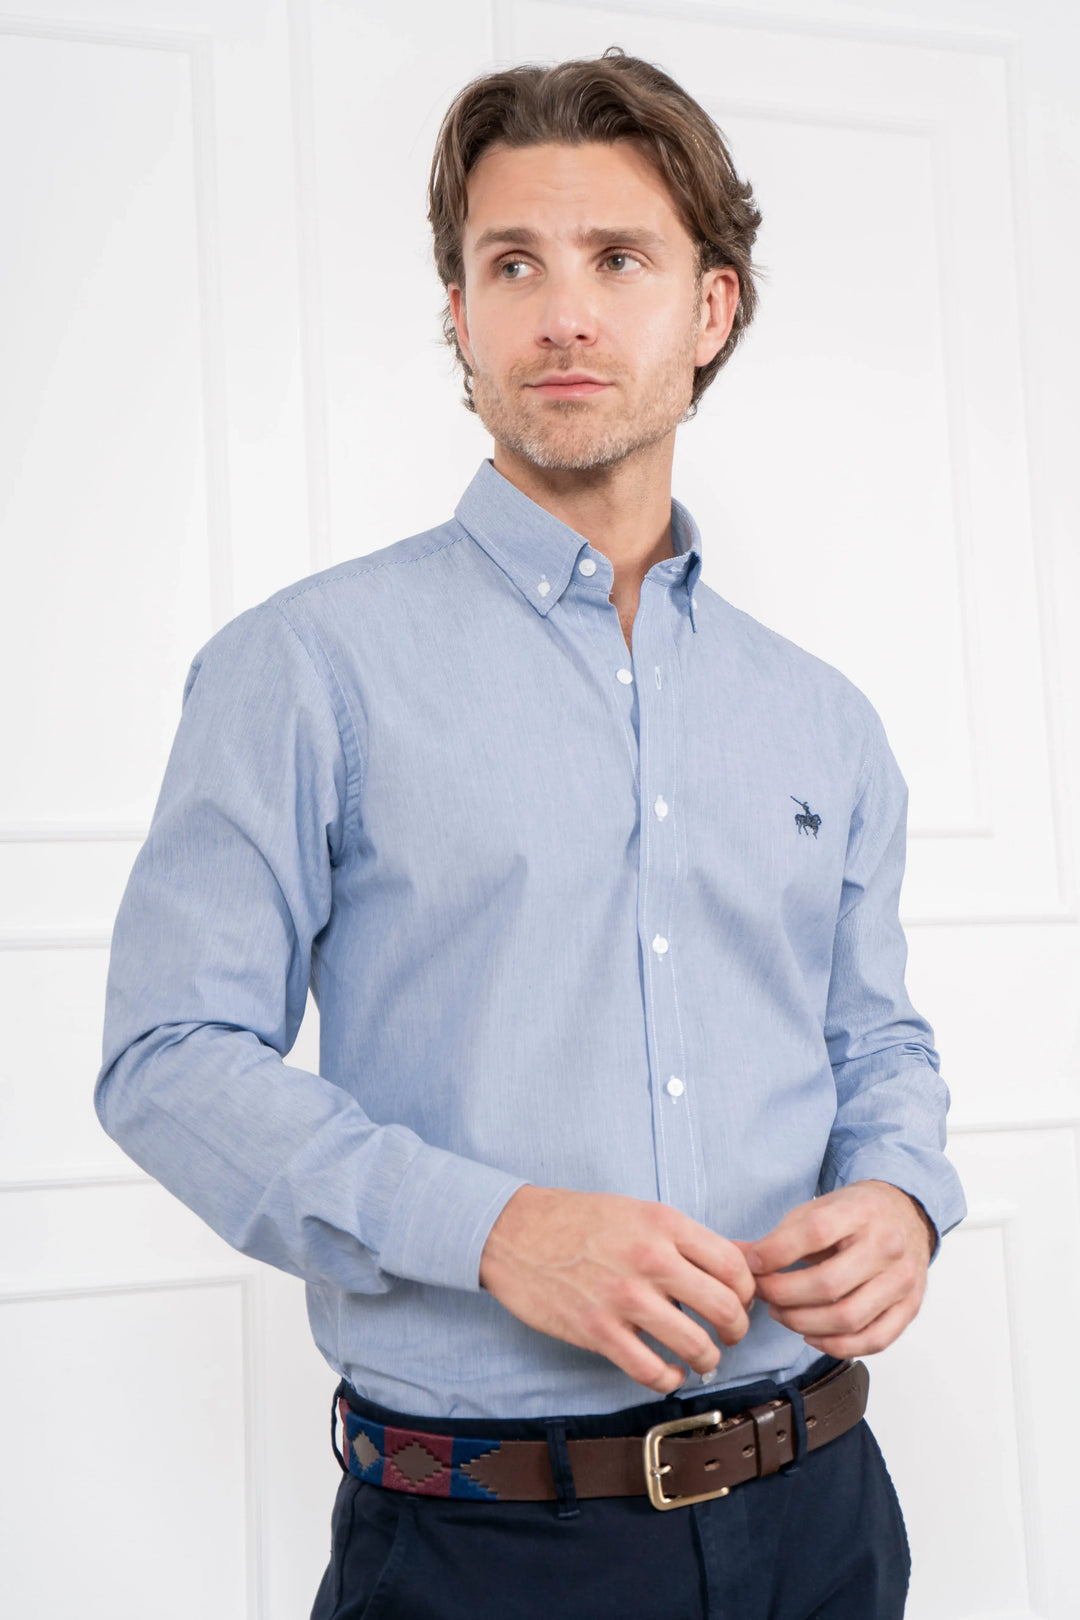 Camisa para hombre azul claro, manga larga. Ideal para looks casuales.